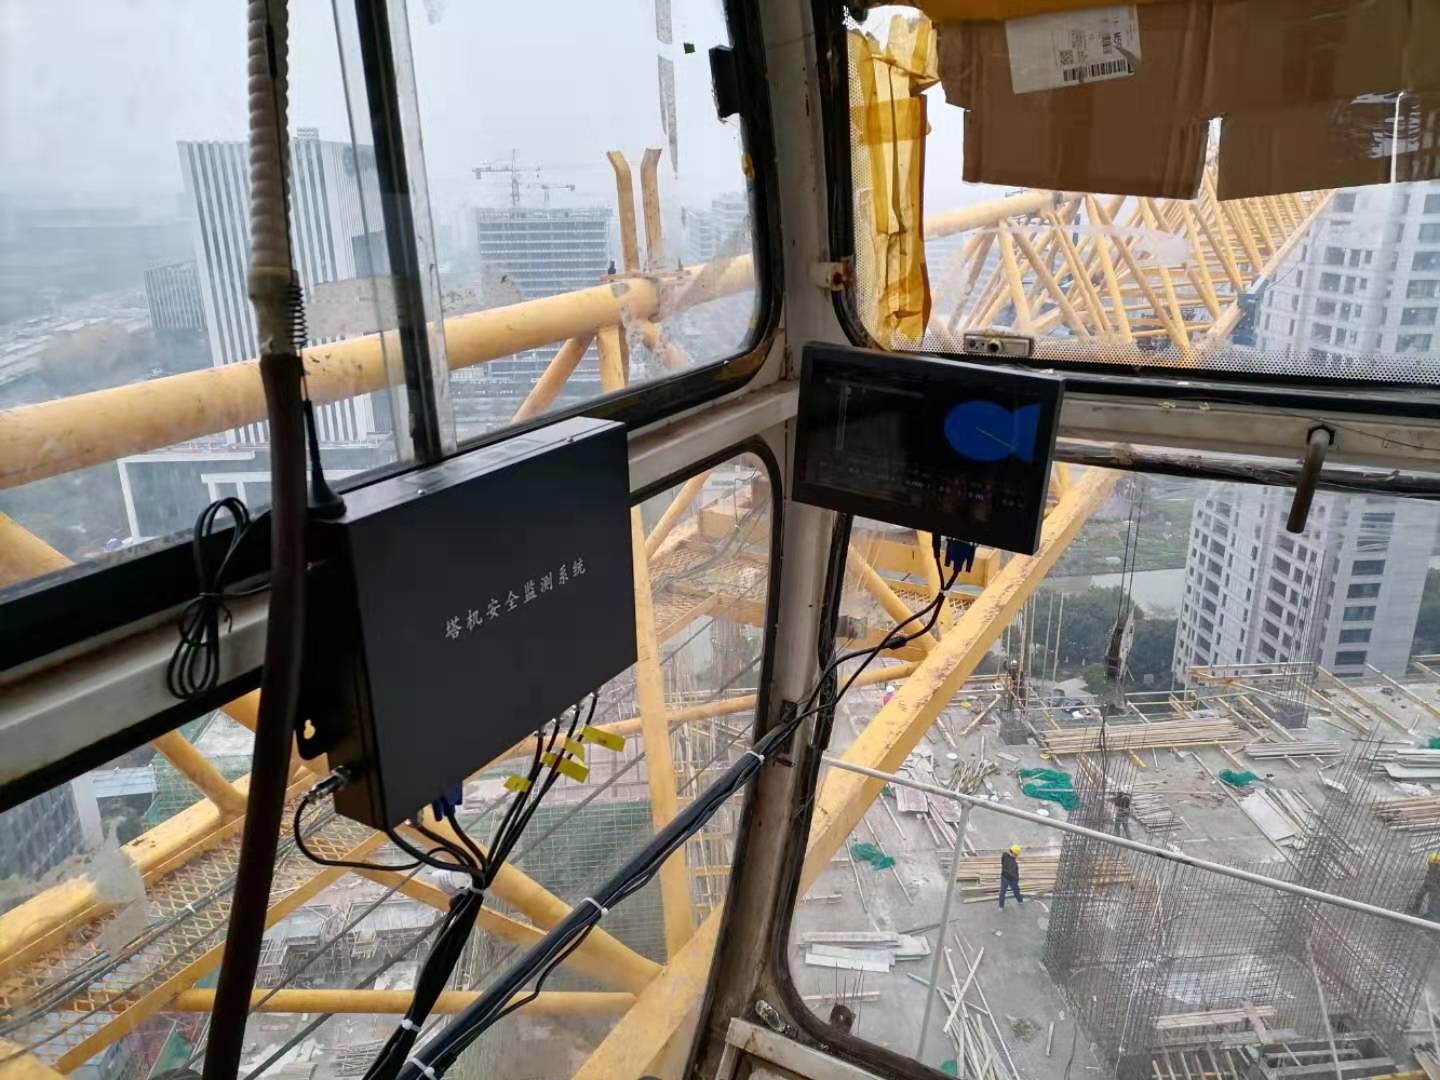 吉林市塔吊安全监测系统包对接平台 智慧工地